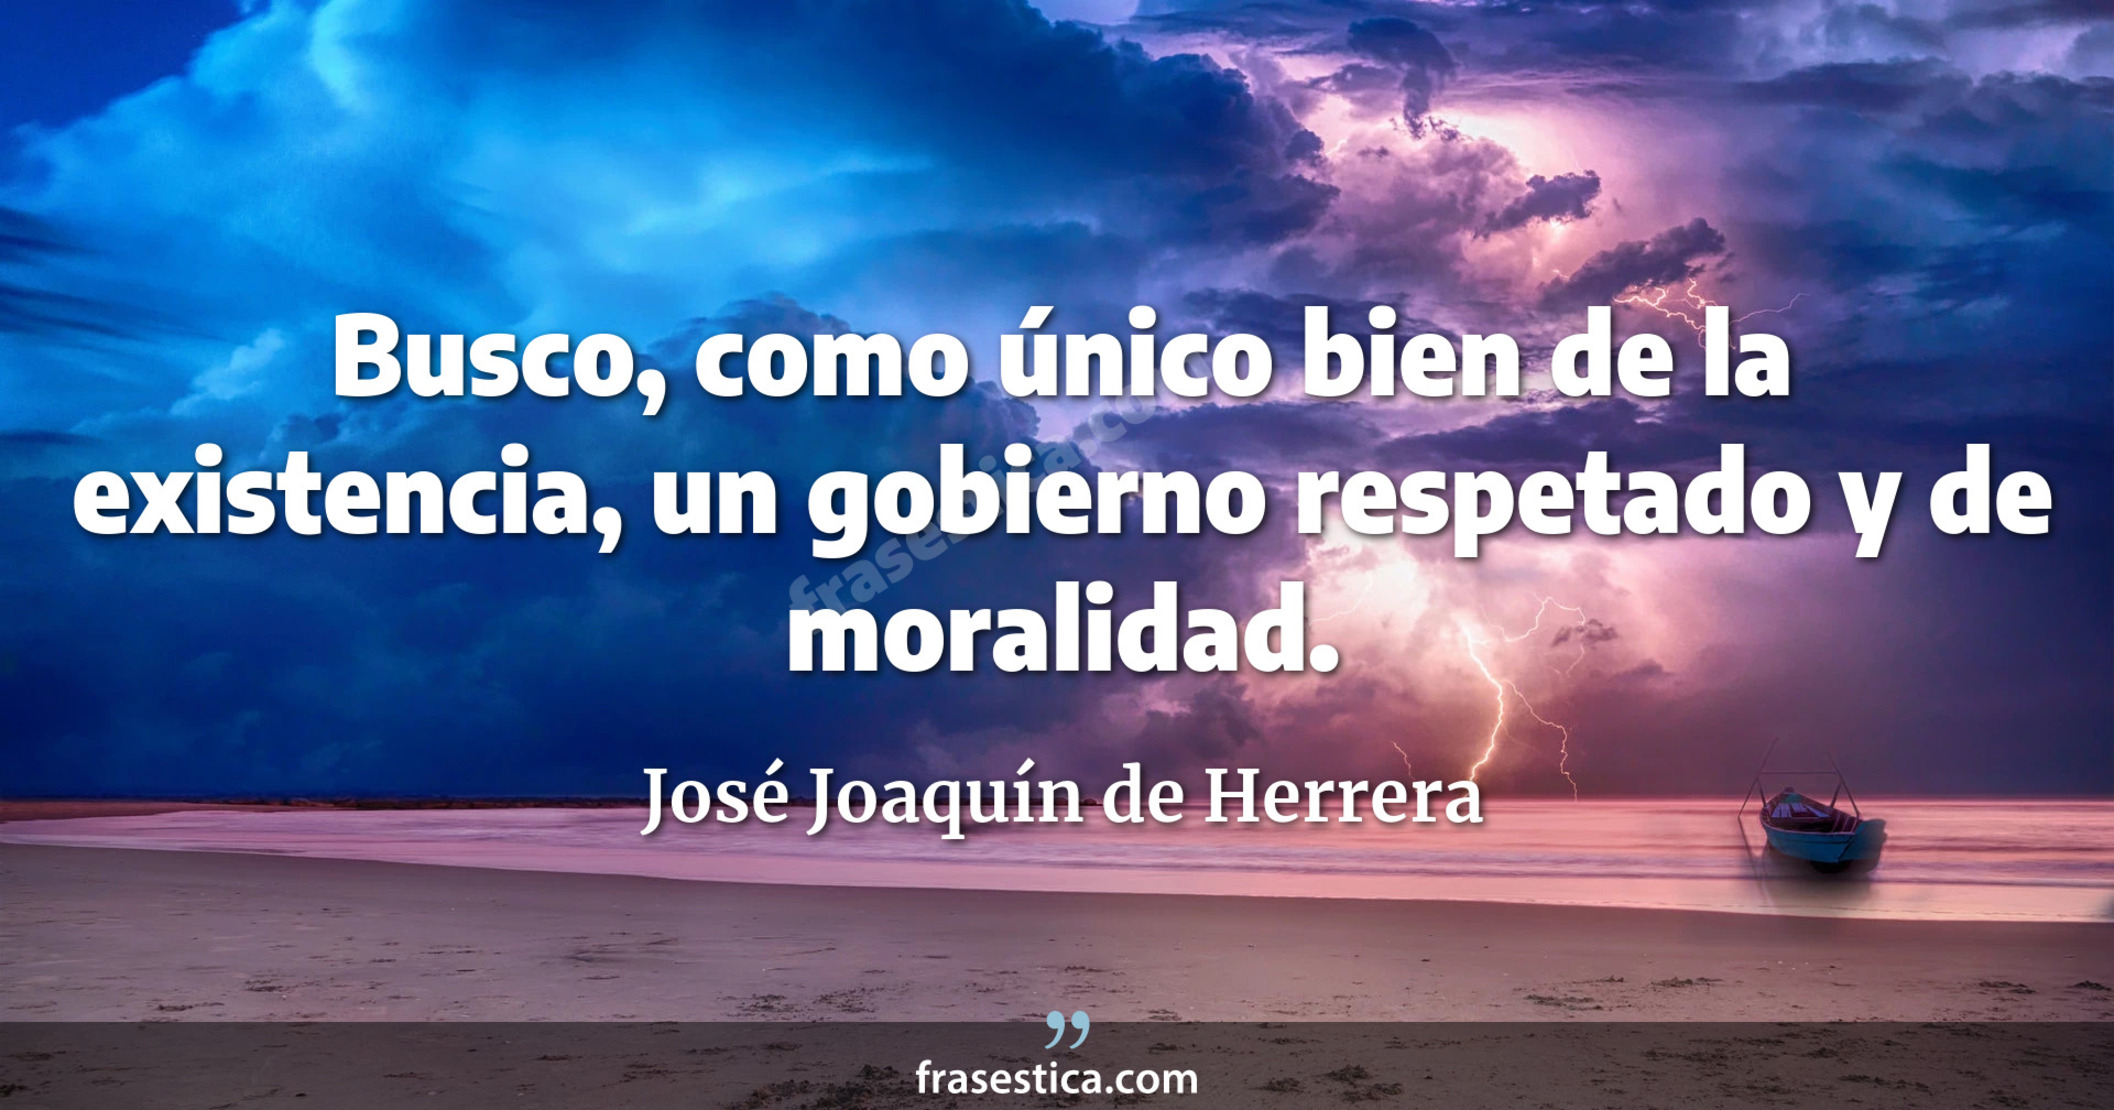 Busco, como único bien de la existencia, un gobierno respetado y de moralidad. - José Joaquín de Herrera